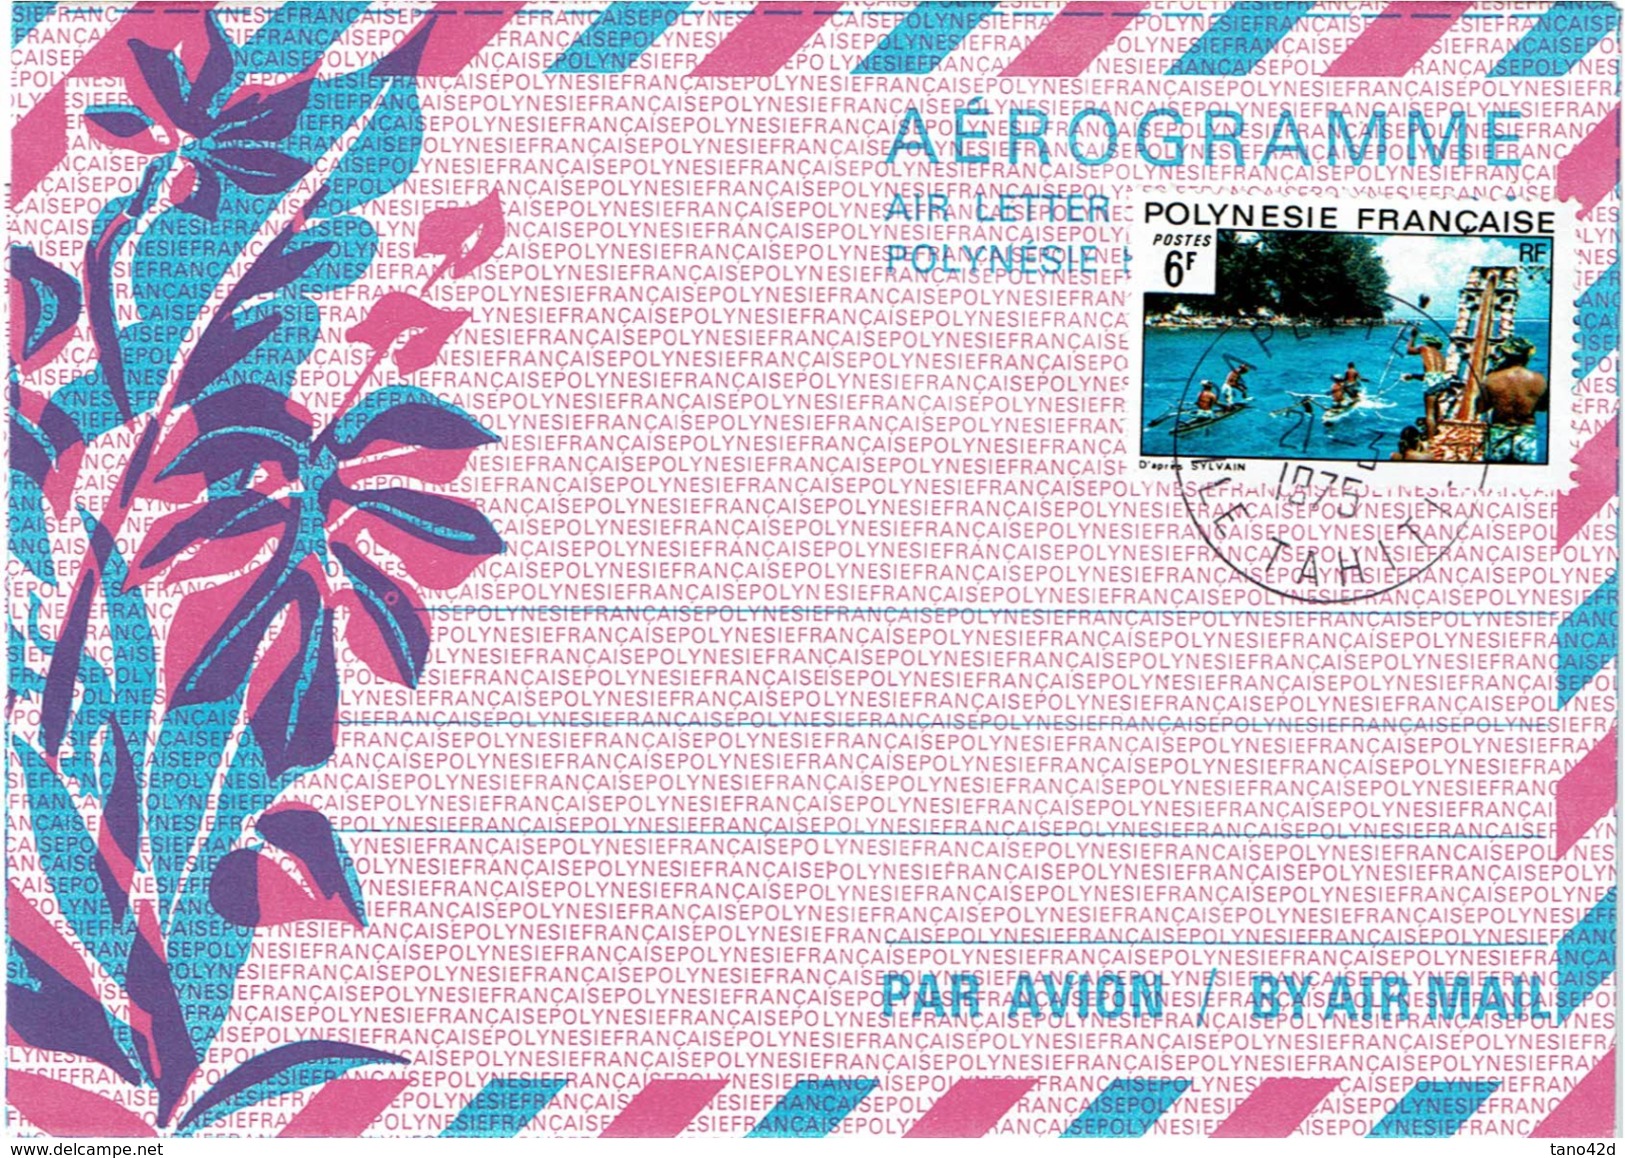 REF BR39 - POLYNESIE FRANCAISE - AEROGRAMME N°1 20F AVEC TPM 6F OBL. - Aerogramas